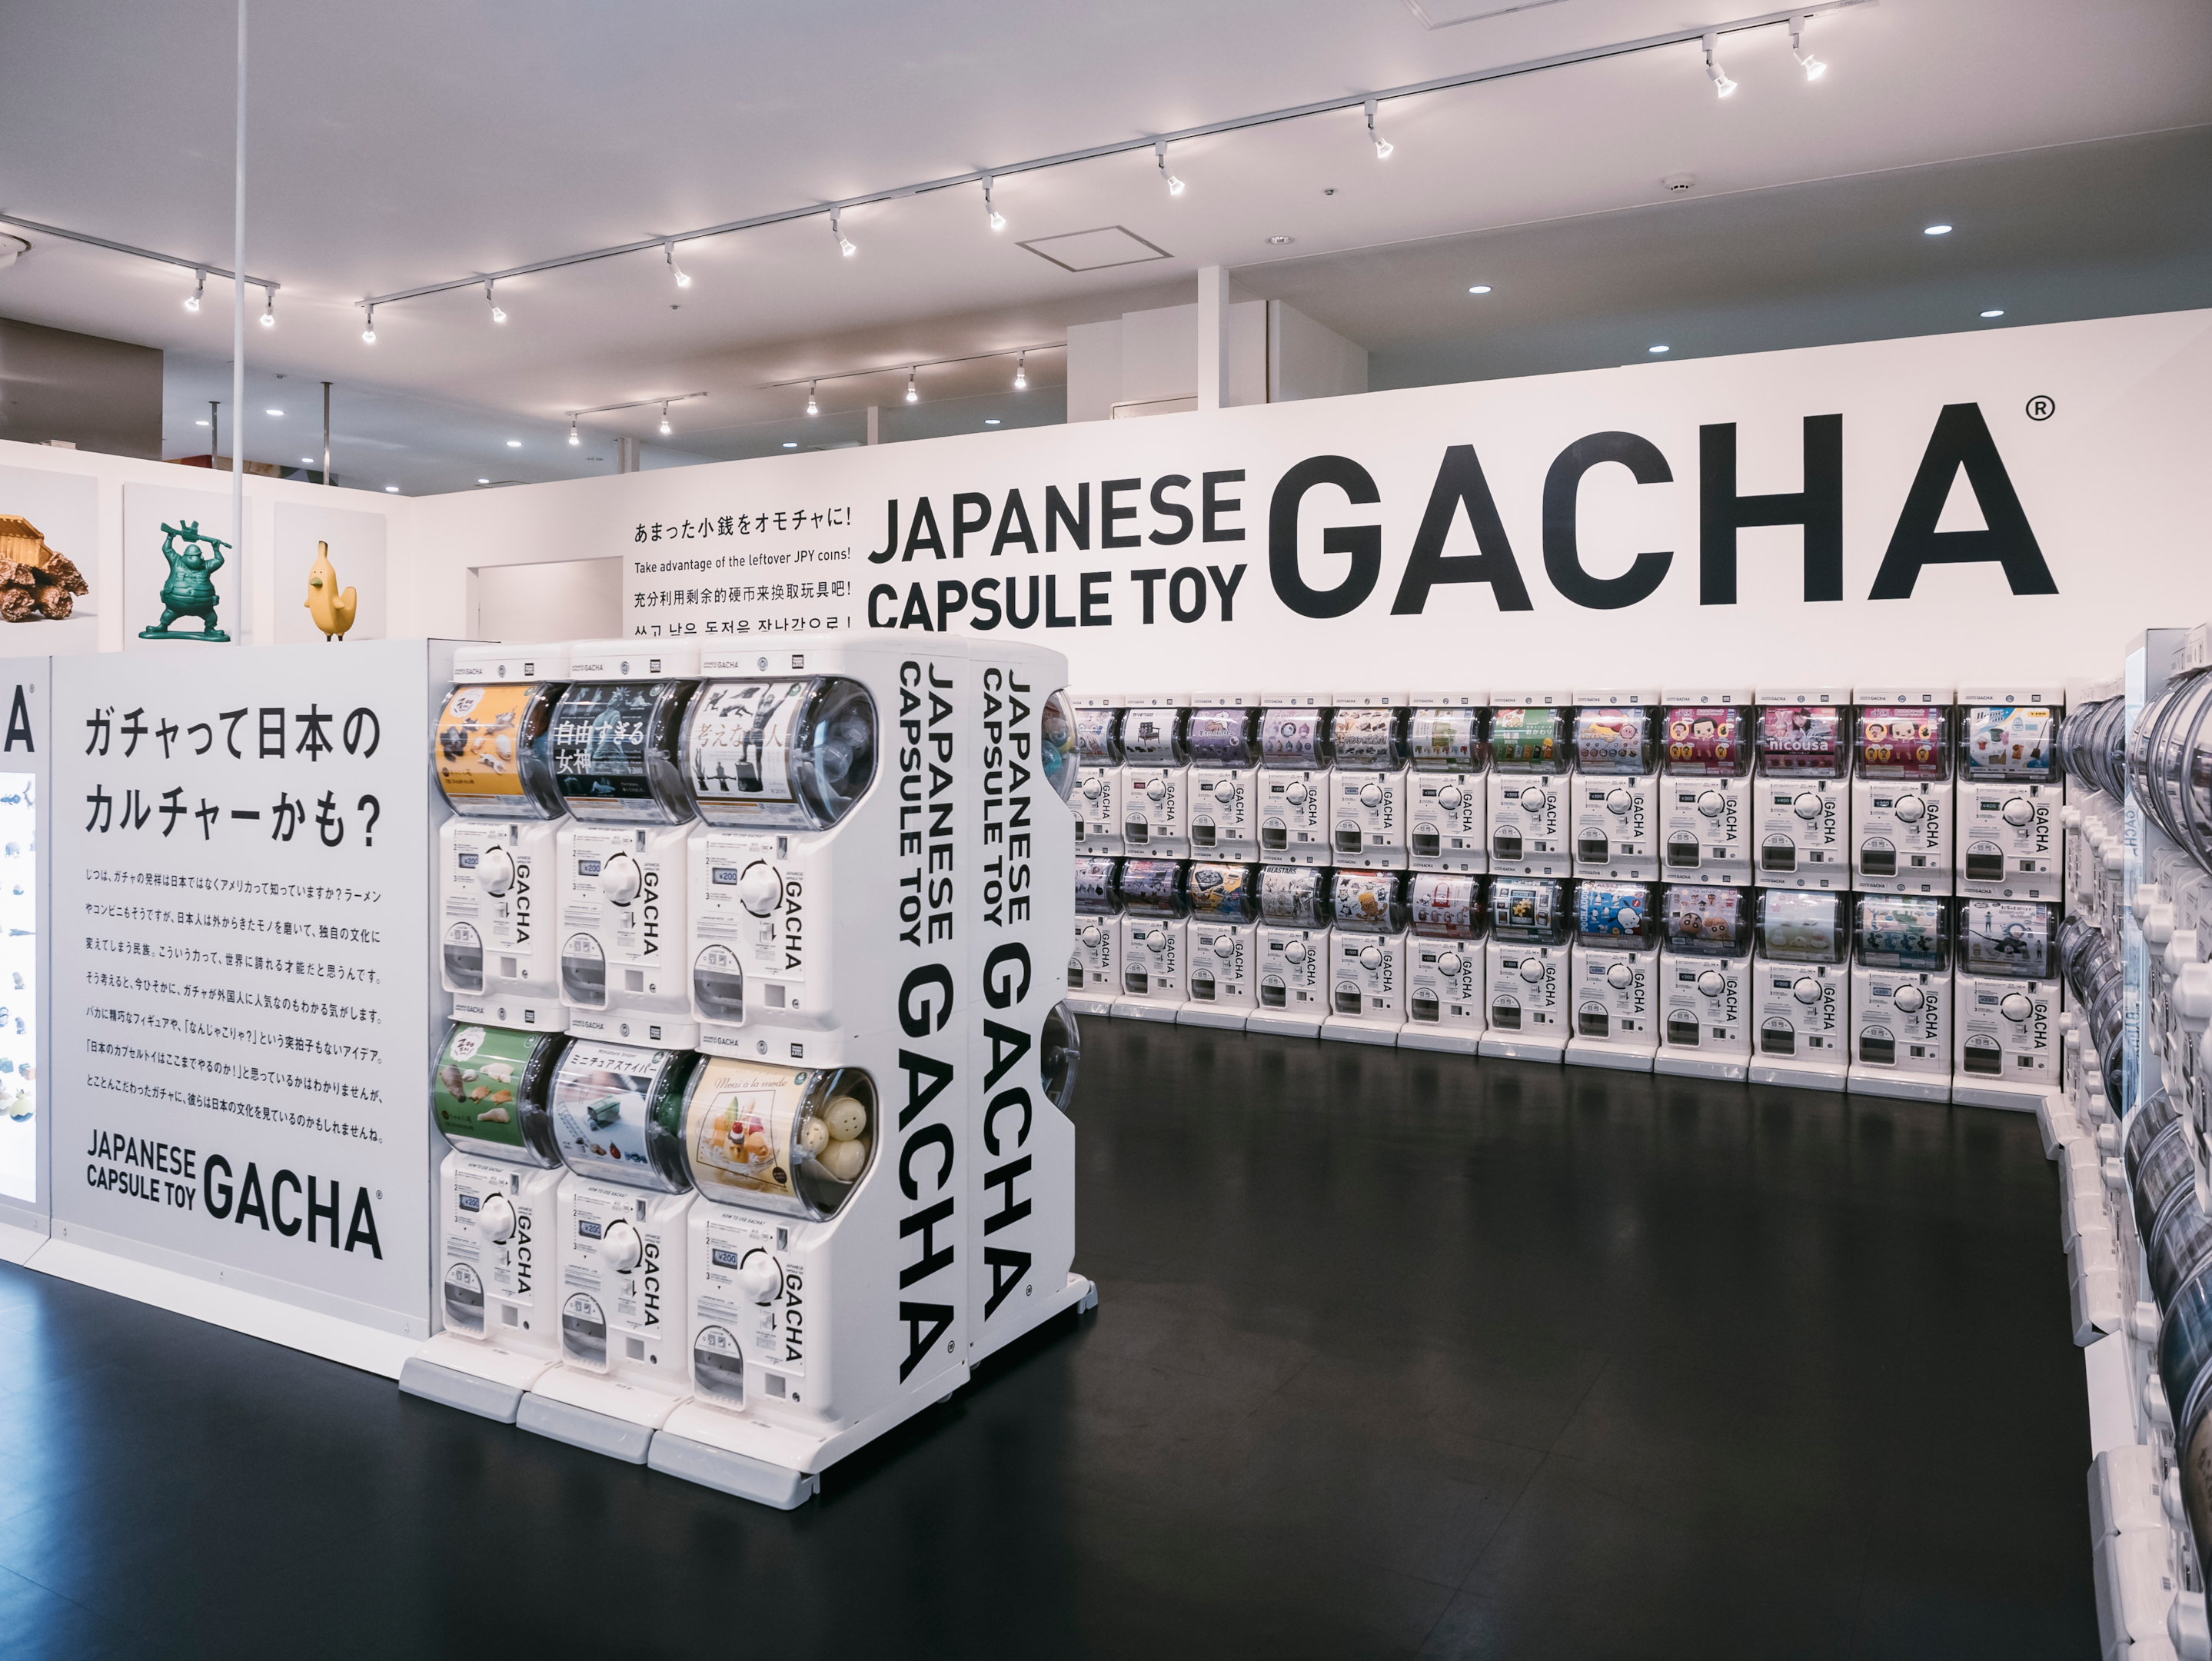 Rows of capsule toys GACHA machines in Tokyo, Japan